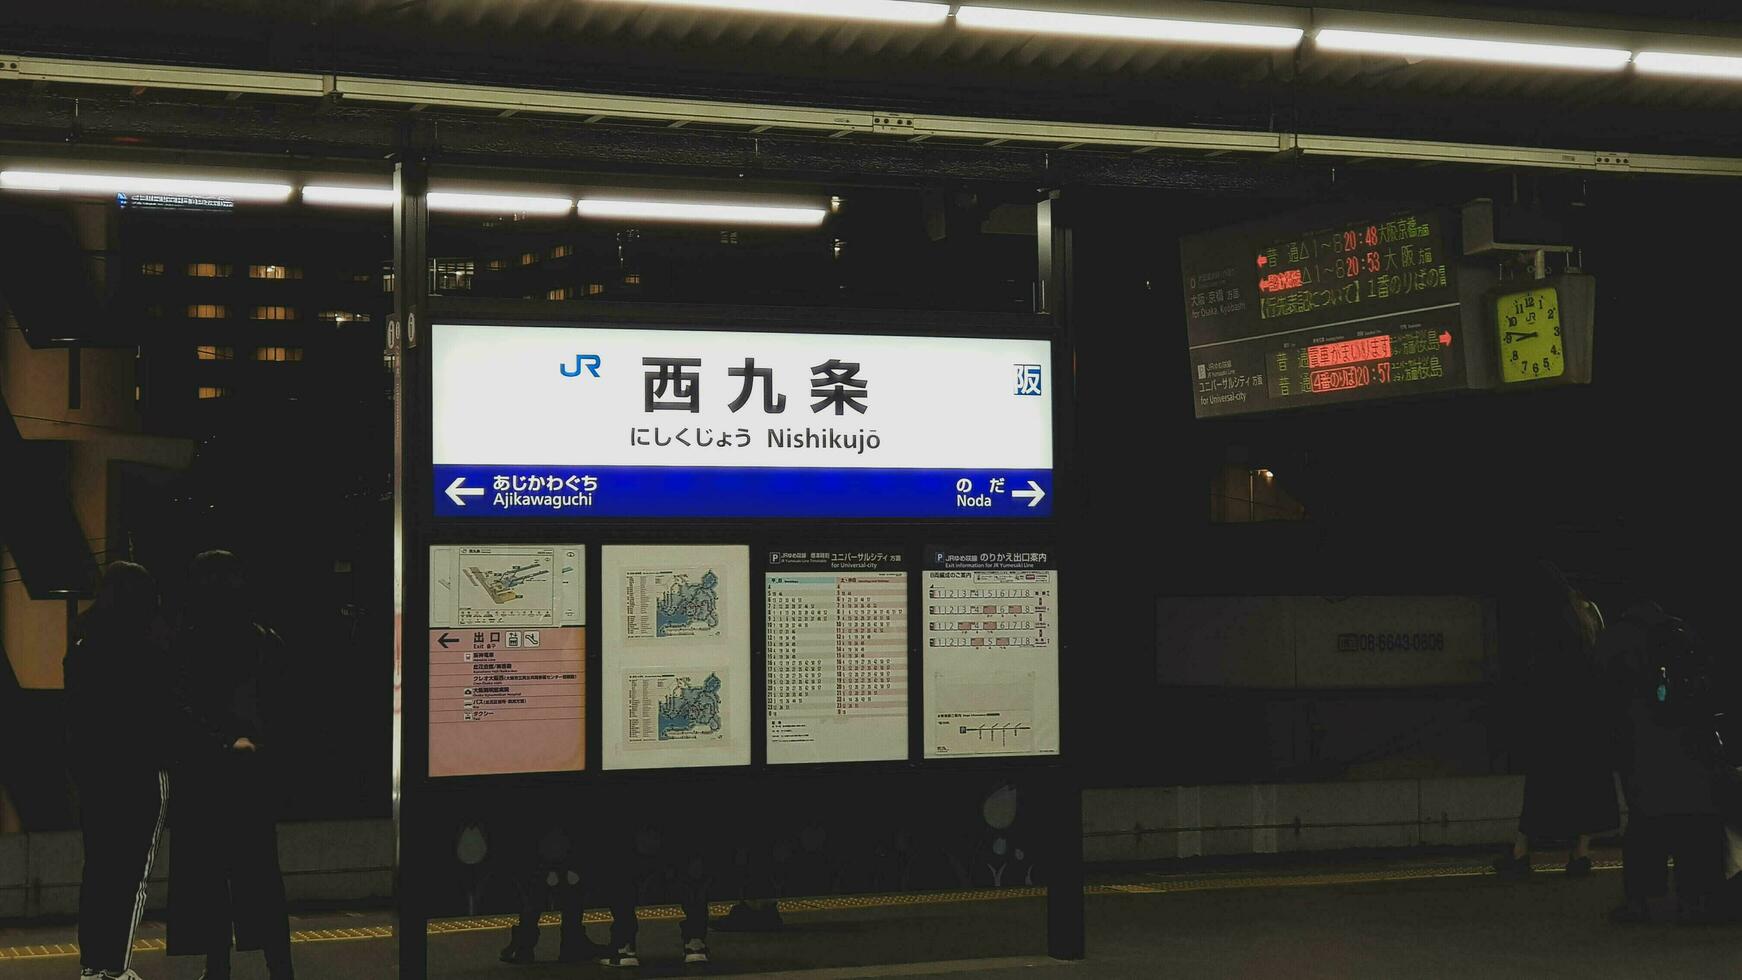 osaka, Japón en abril 2019. letrero de nishikujo estación con kanji y katakana escribiendo. foto